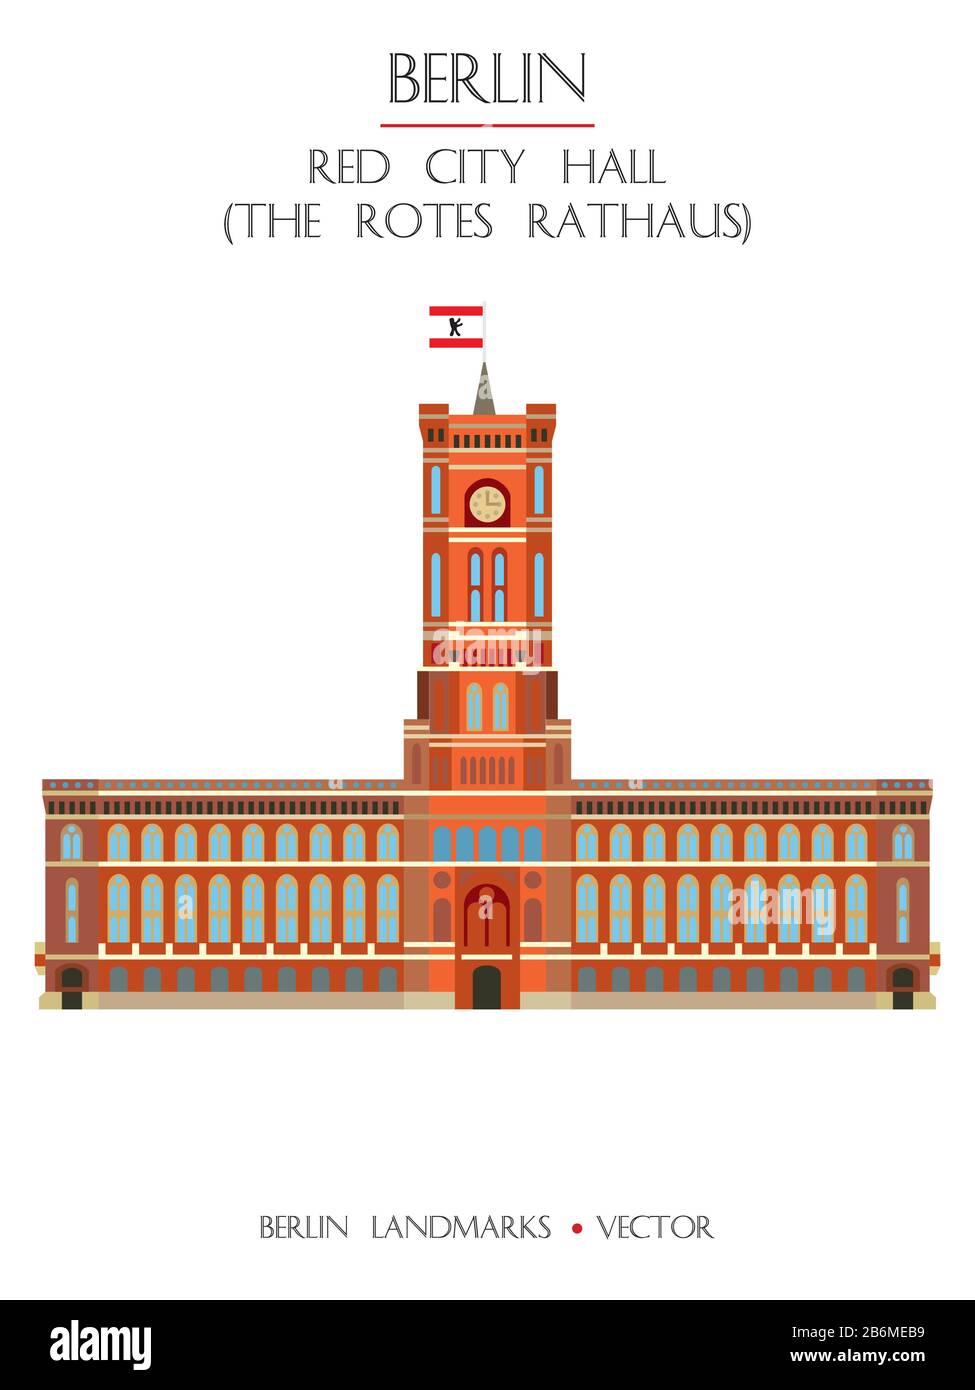 Variopinto vettore Red City Hall (The Rotes Rathaus), vista frontale, famoso punto di riferimento di Berlino, Germania. Immagine piatta verticale vettoriale isolata su bianco Illustrazione Vettoriale